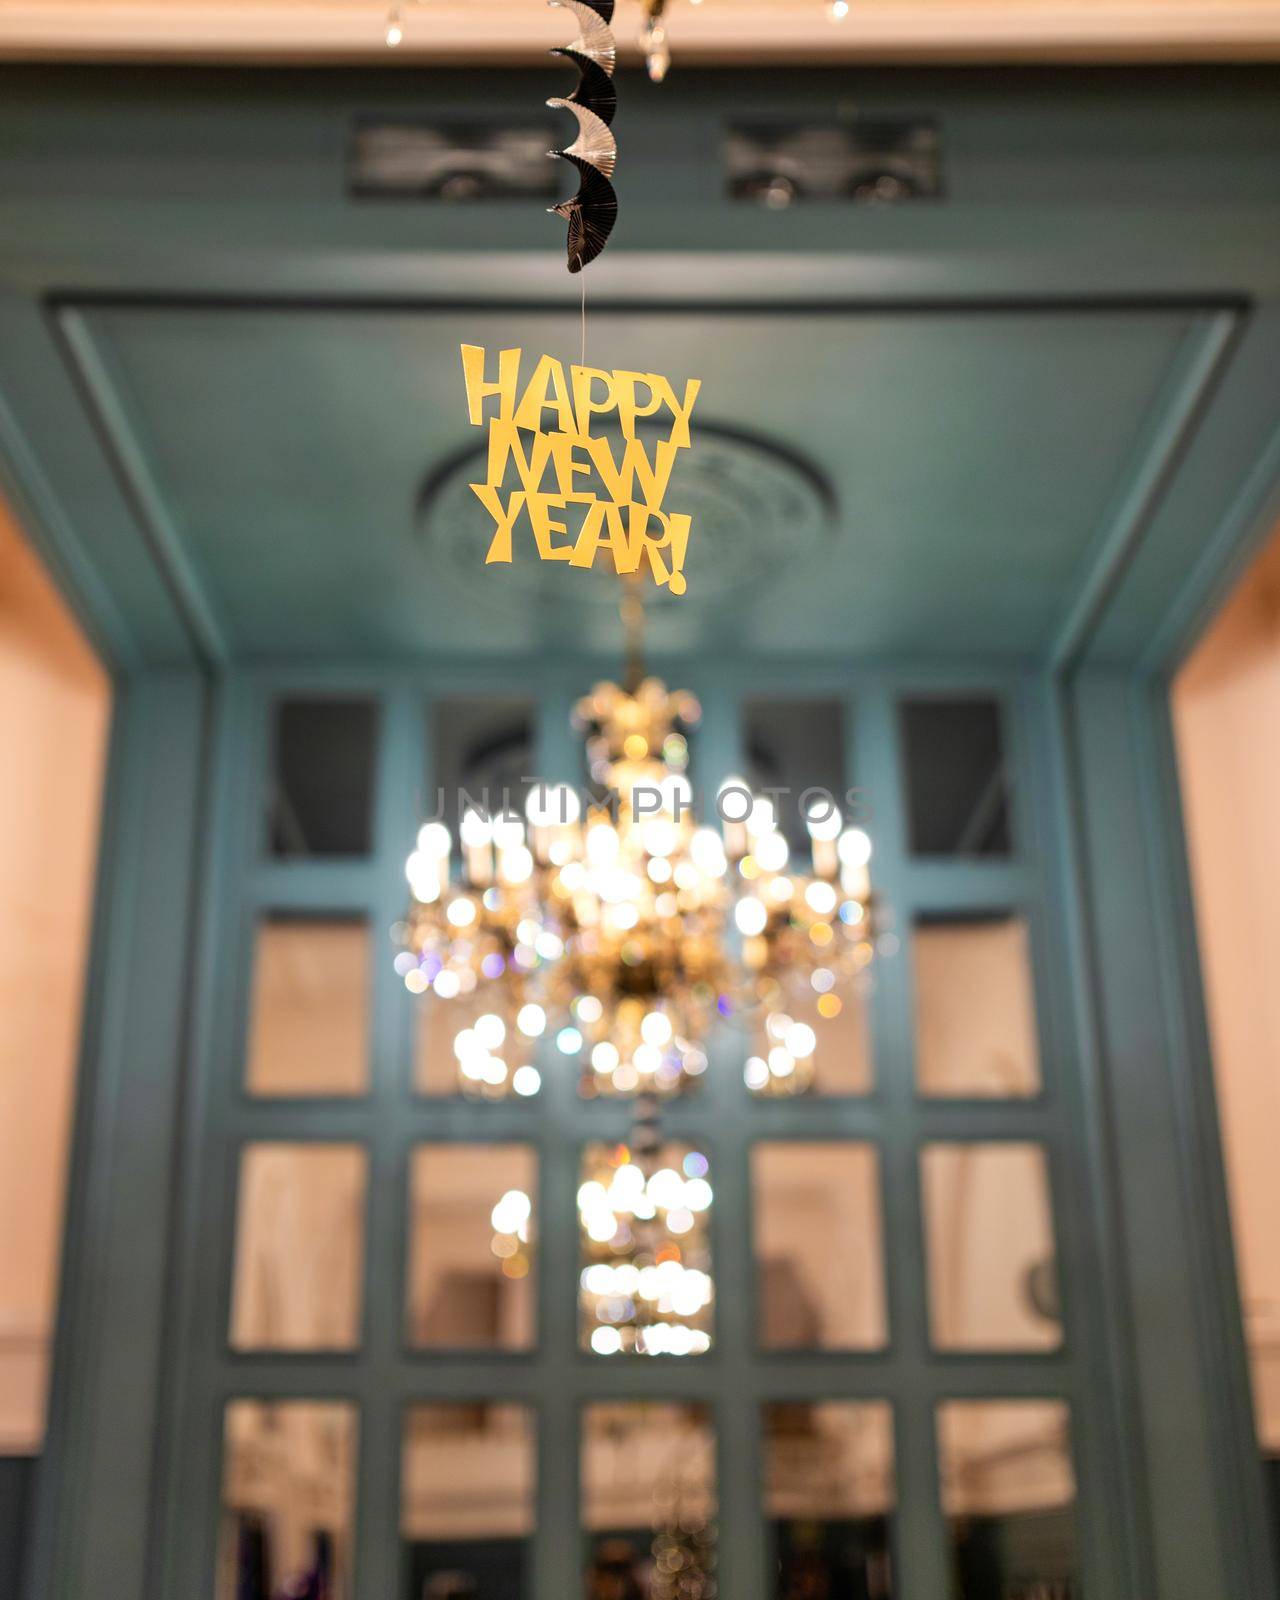 Happy New Year sticker in the restaurant interior